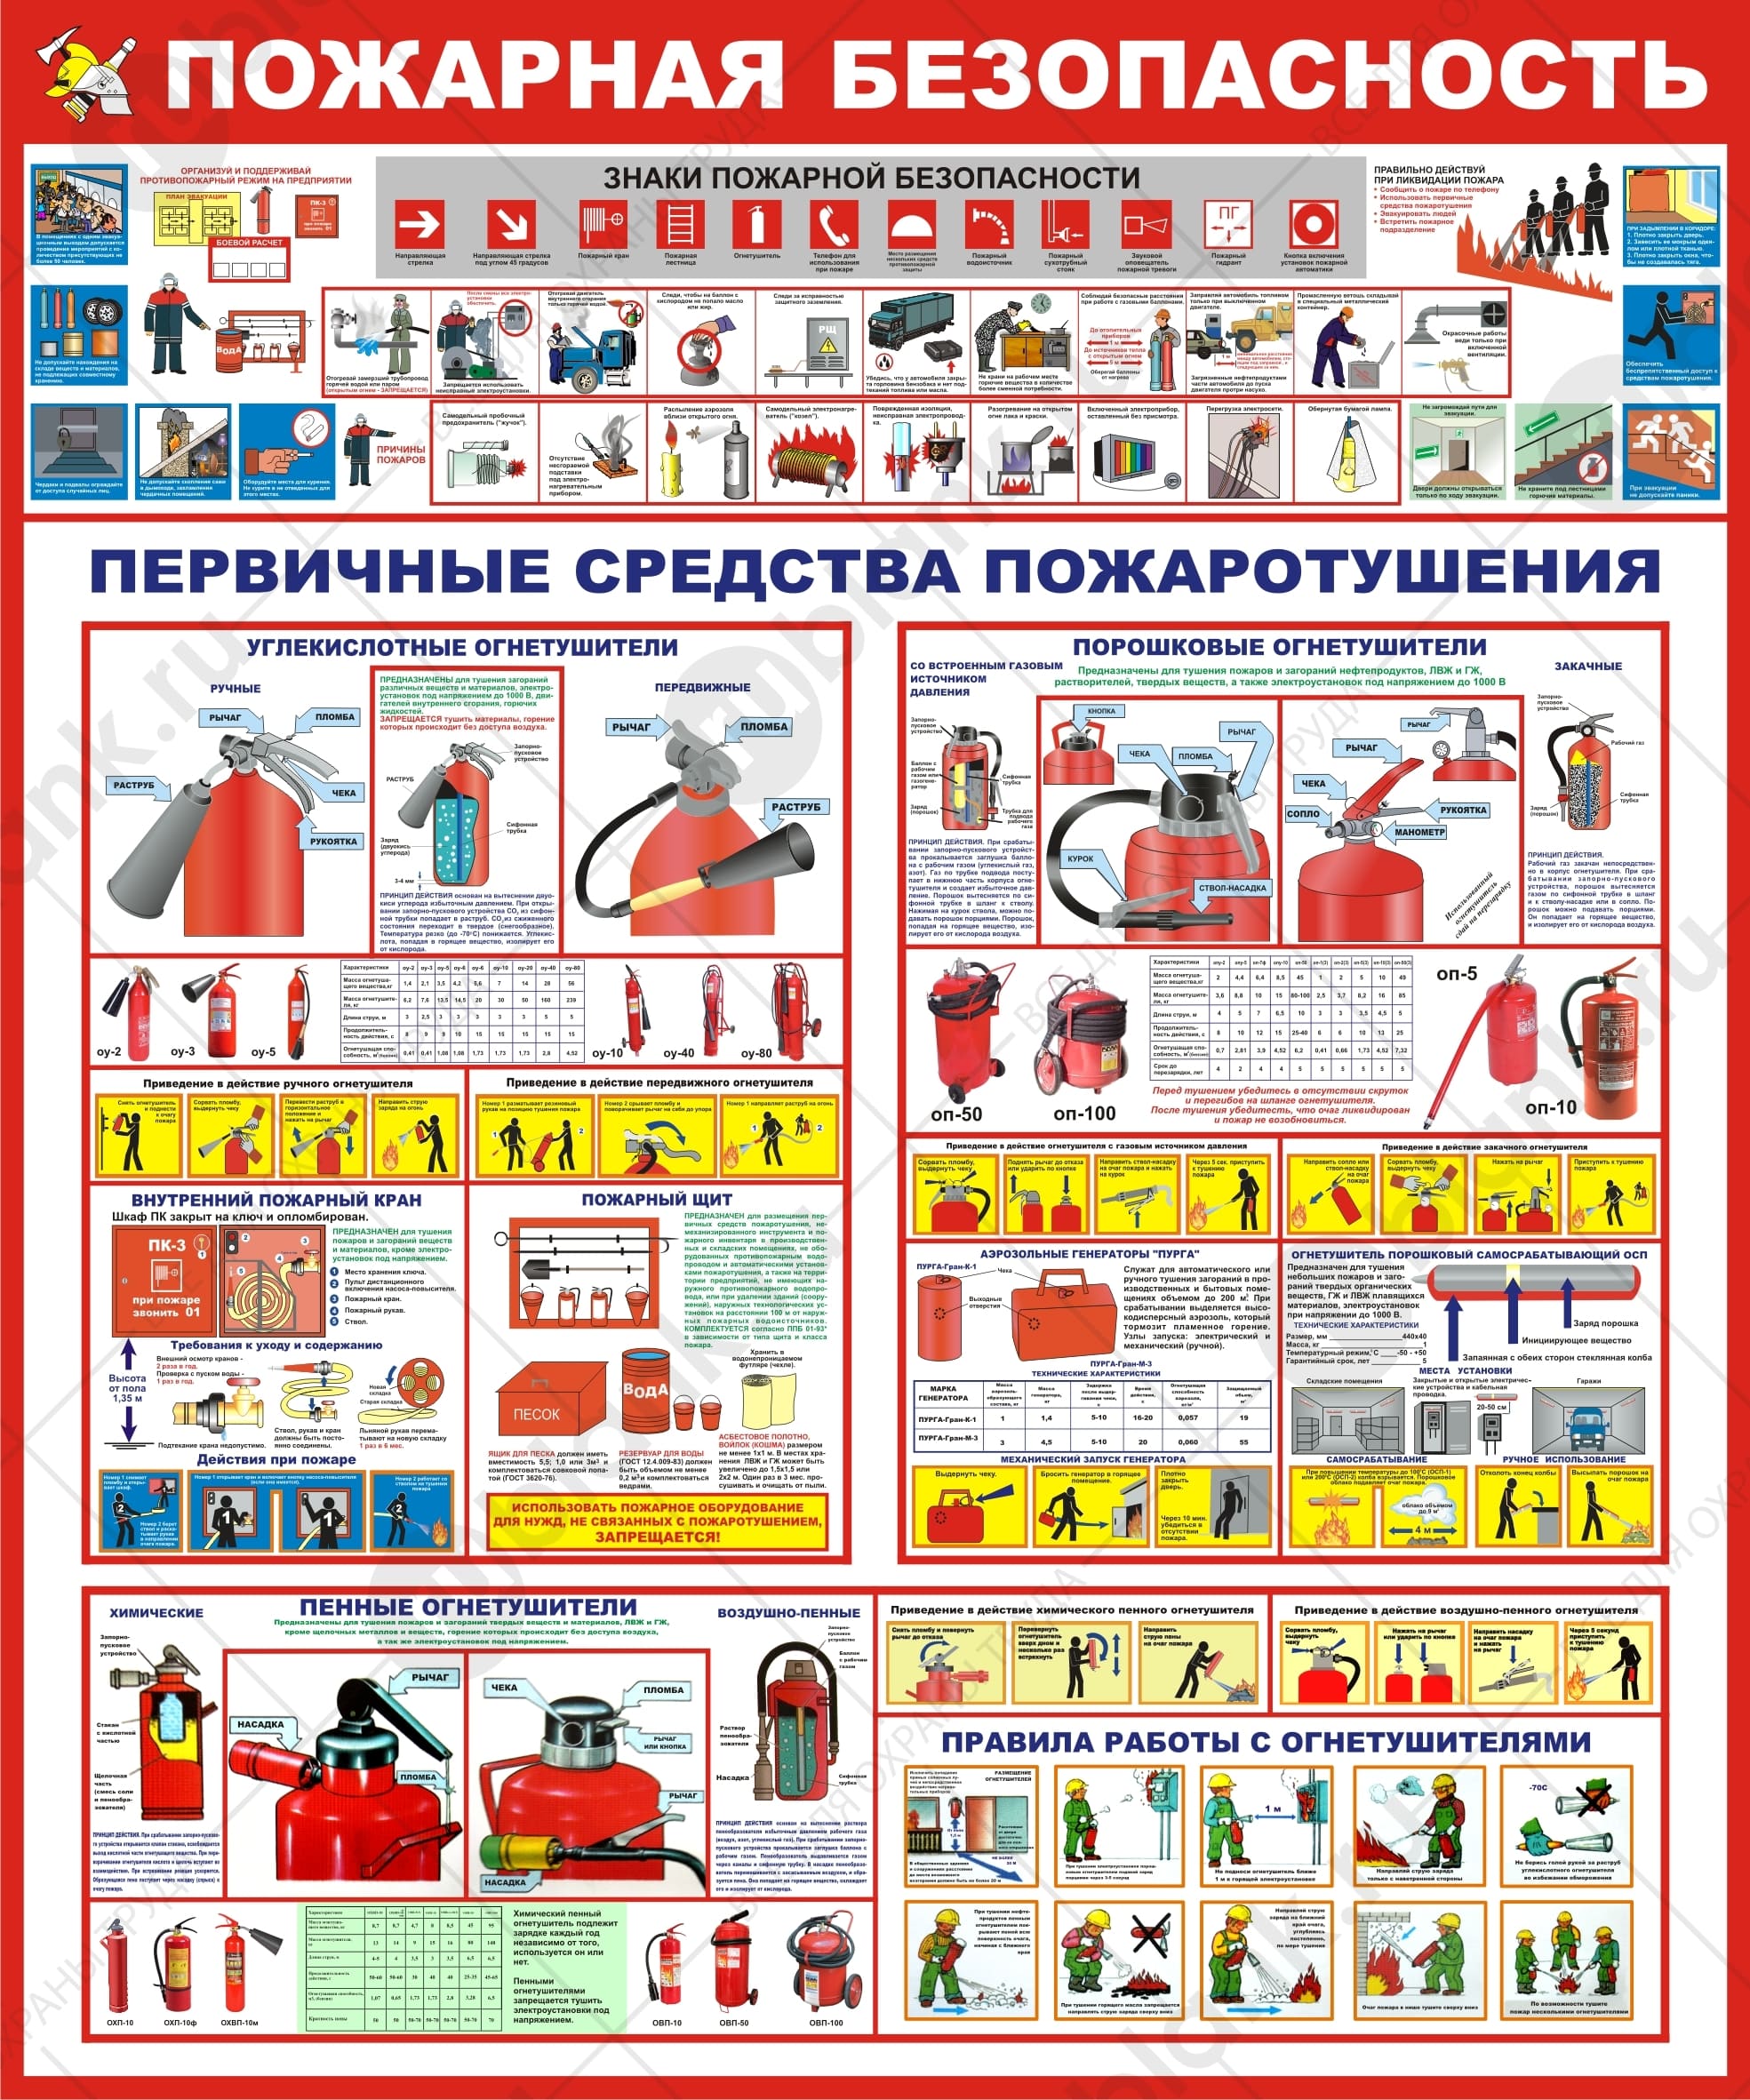 Плакат "Пожарная безопасность. Первичные средства пожаротушения"